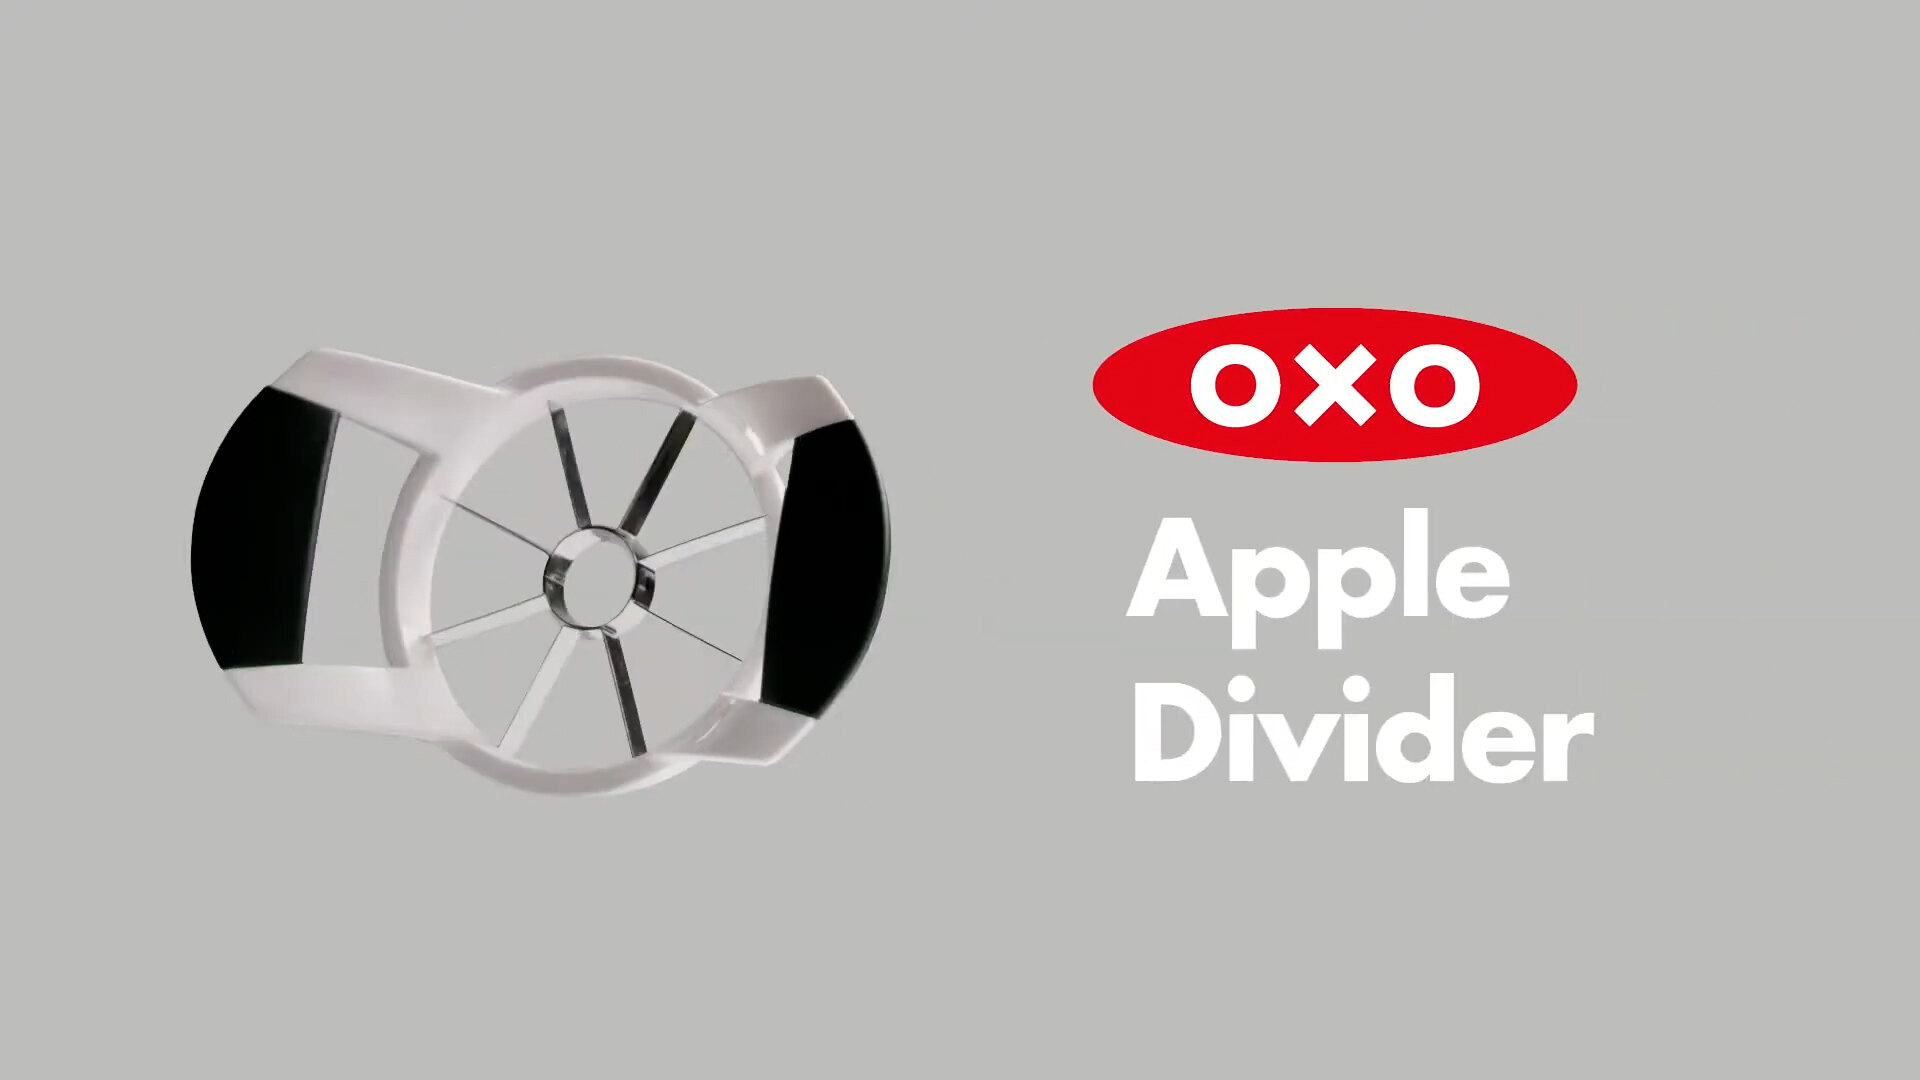 OXO Apple Divider